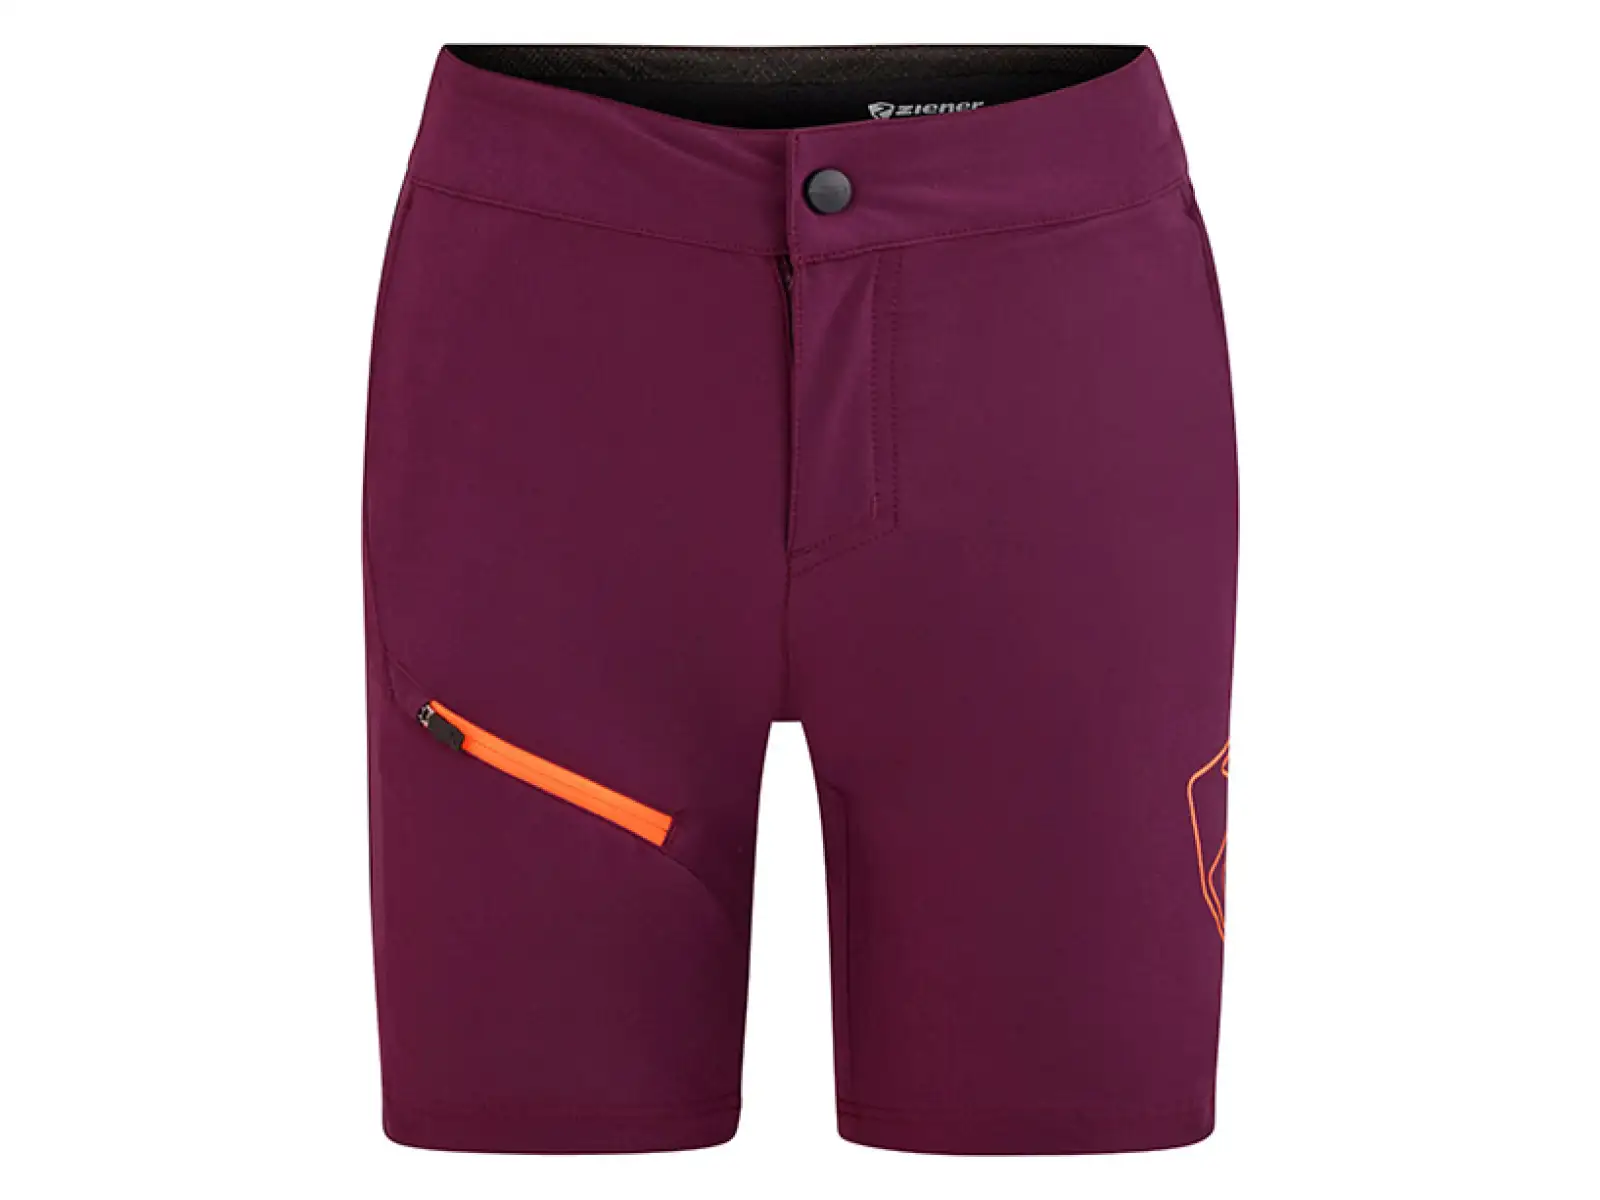 Ziener Natsu Junior dětské šortky fialová/oranžová